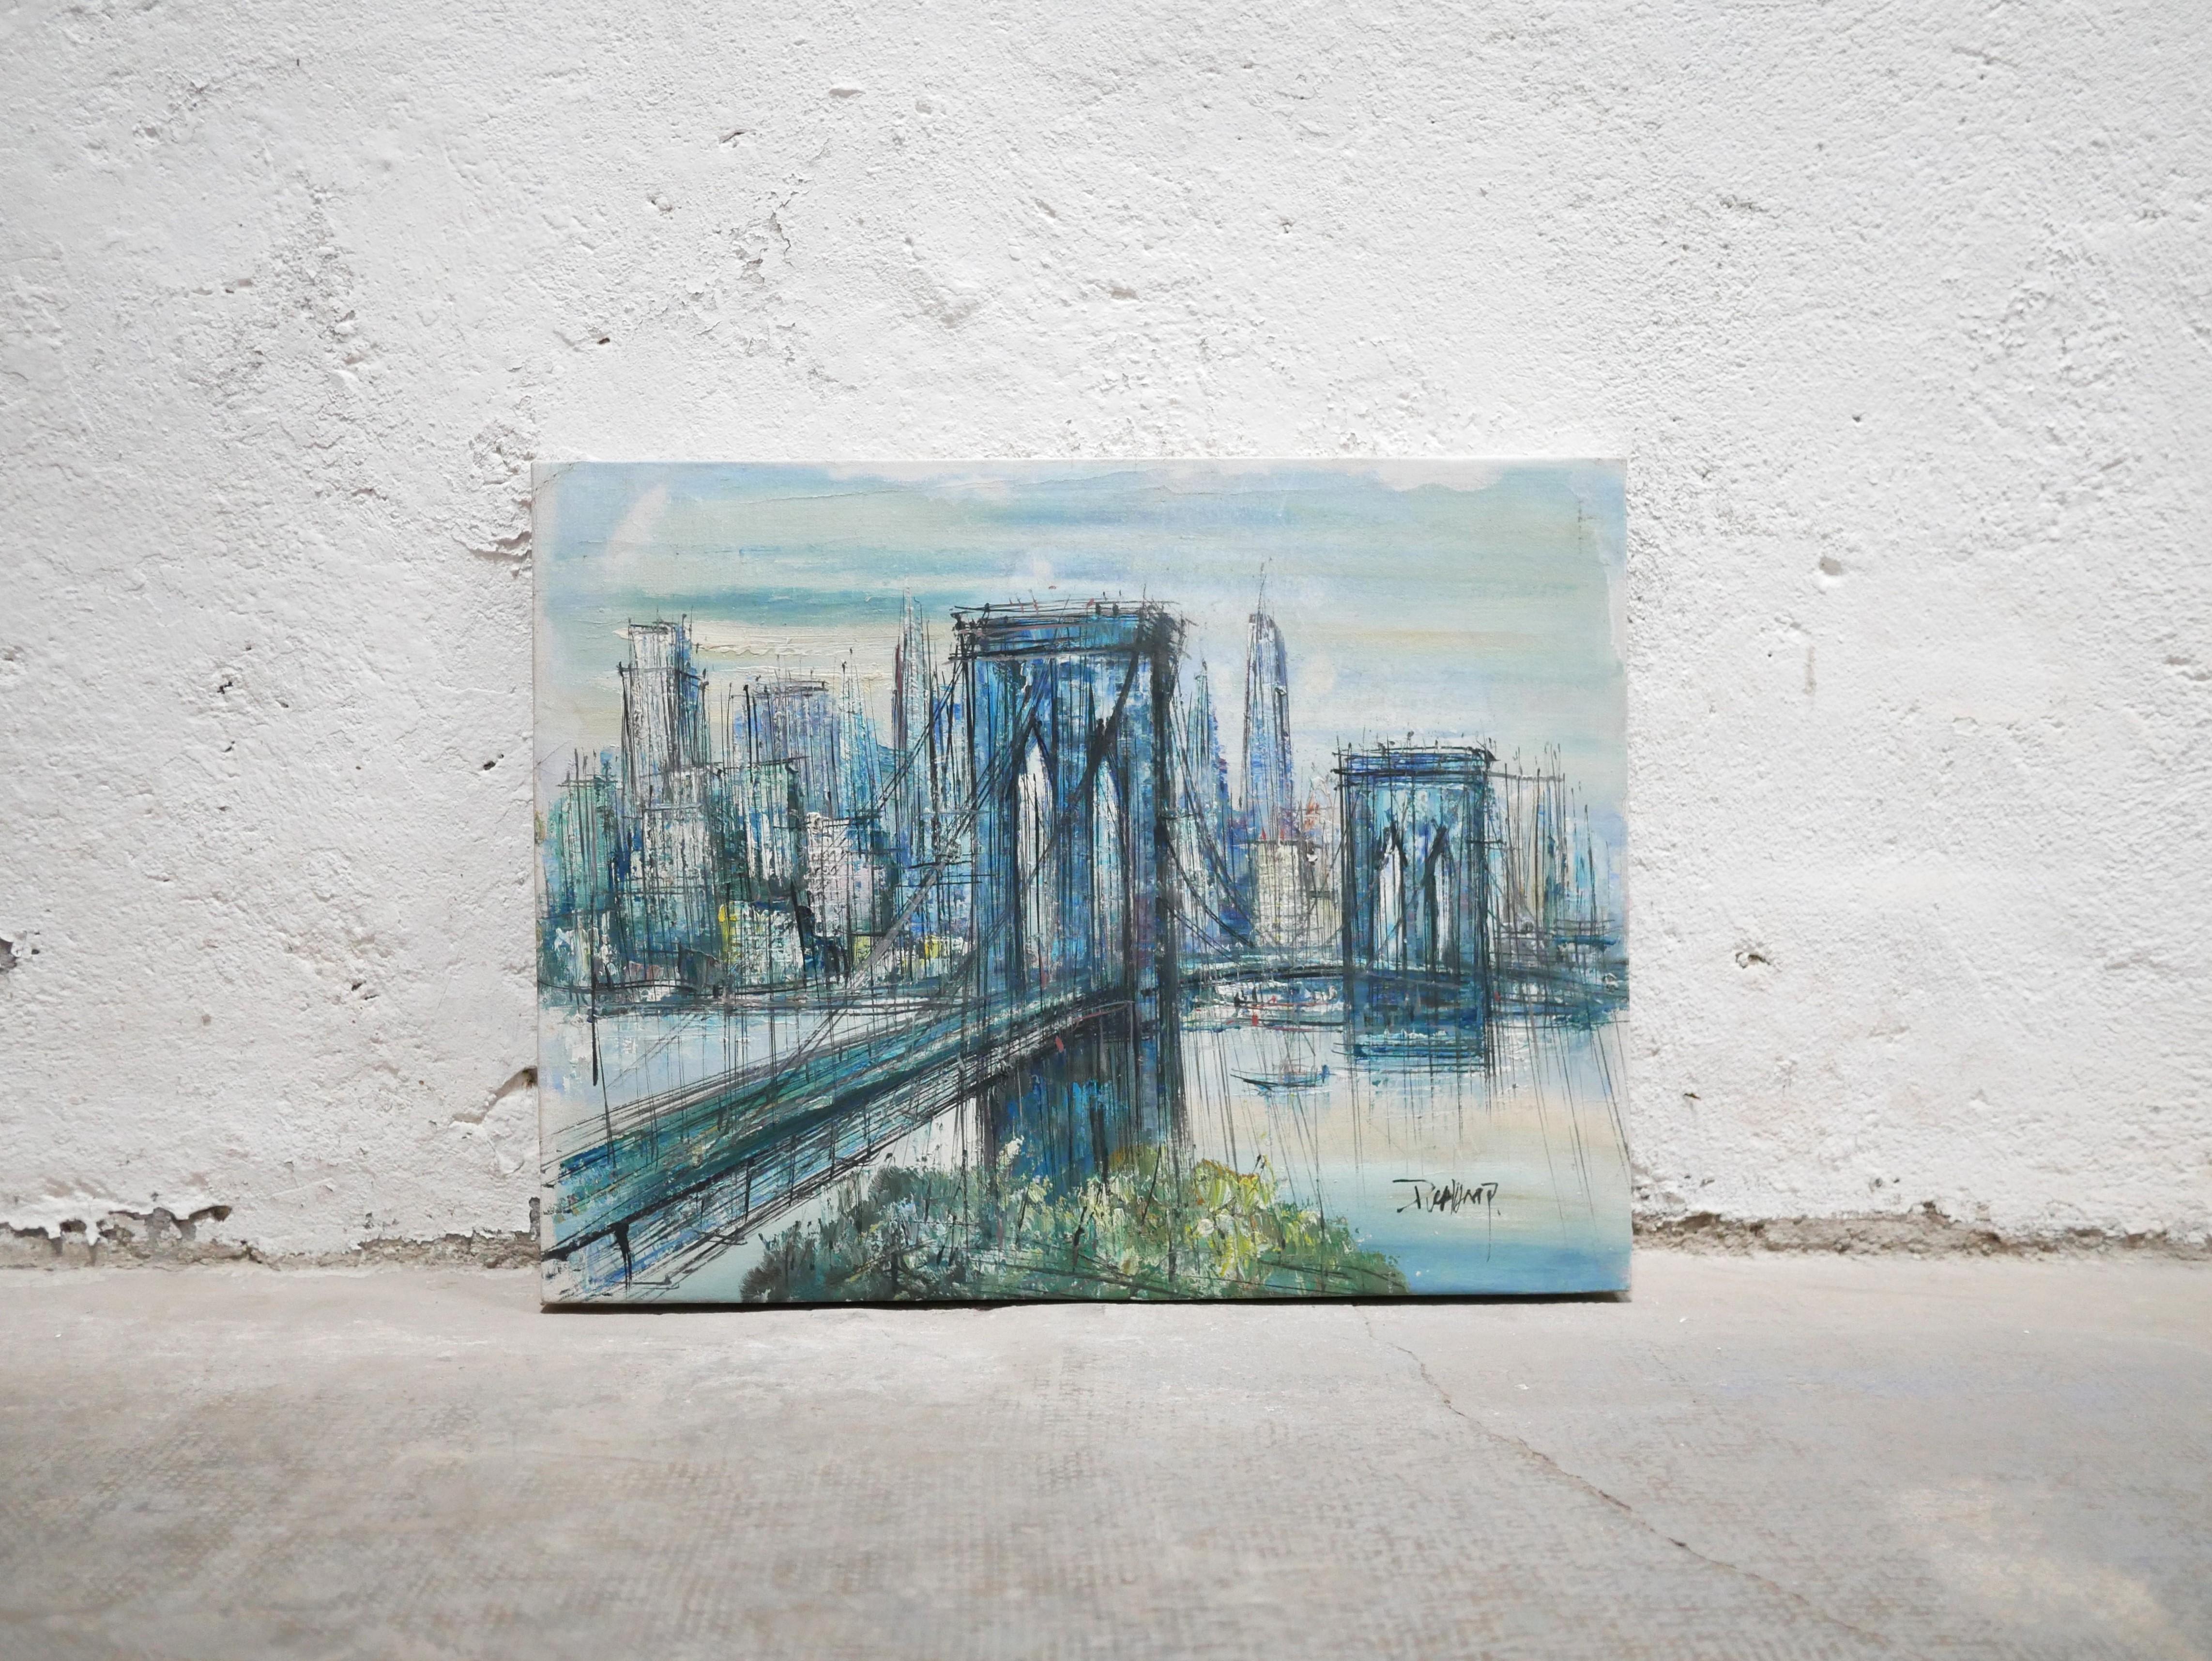 Öl auf Leinwand Die Brooklyn Bridge in New York, signiert von der französischen Malerin Suzanne Duchamp aus den 50er Jahren.

Sie stammt aus einer Künstlerfamilie und ist die Schwester von Jacques Villon, Raymond Duchamp-Villon und Marcel Duchamp.